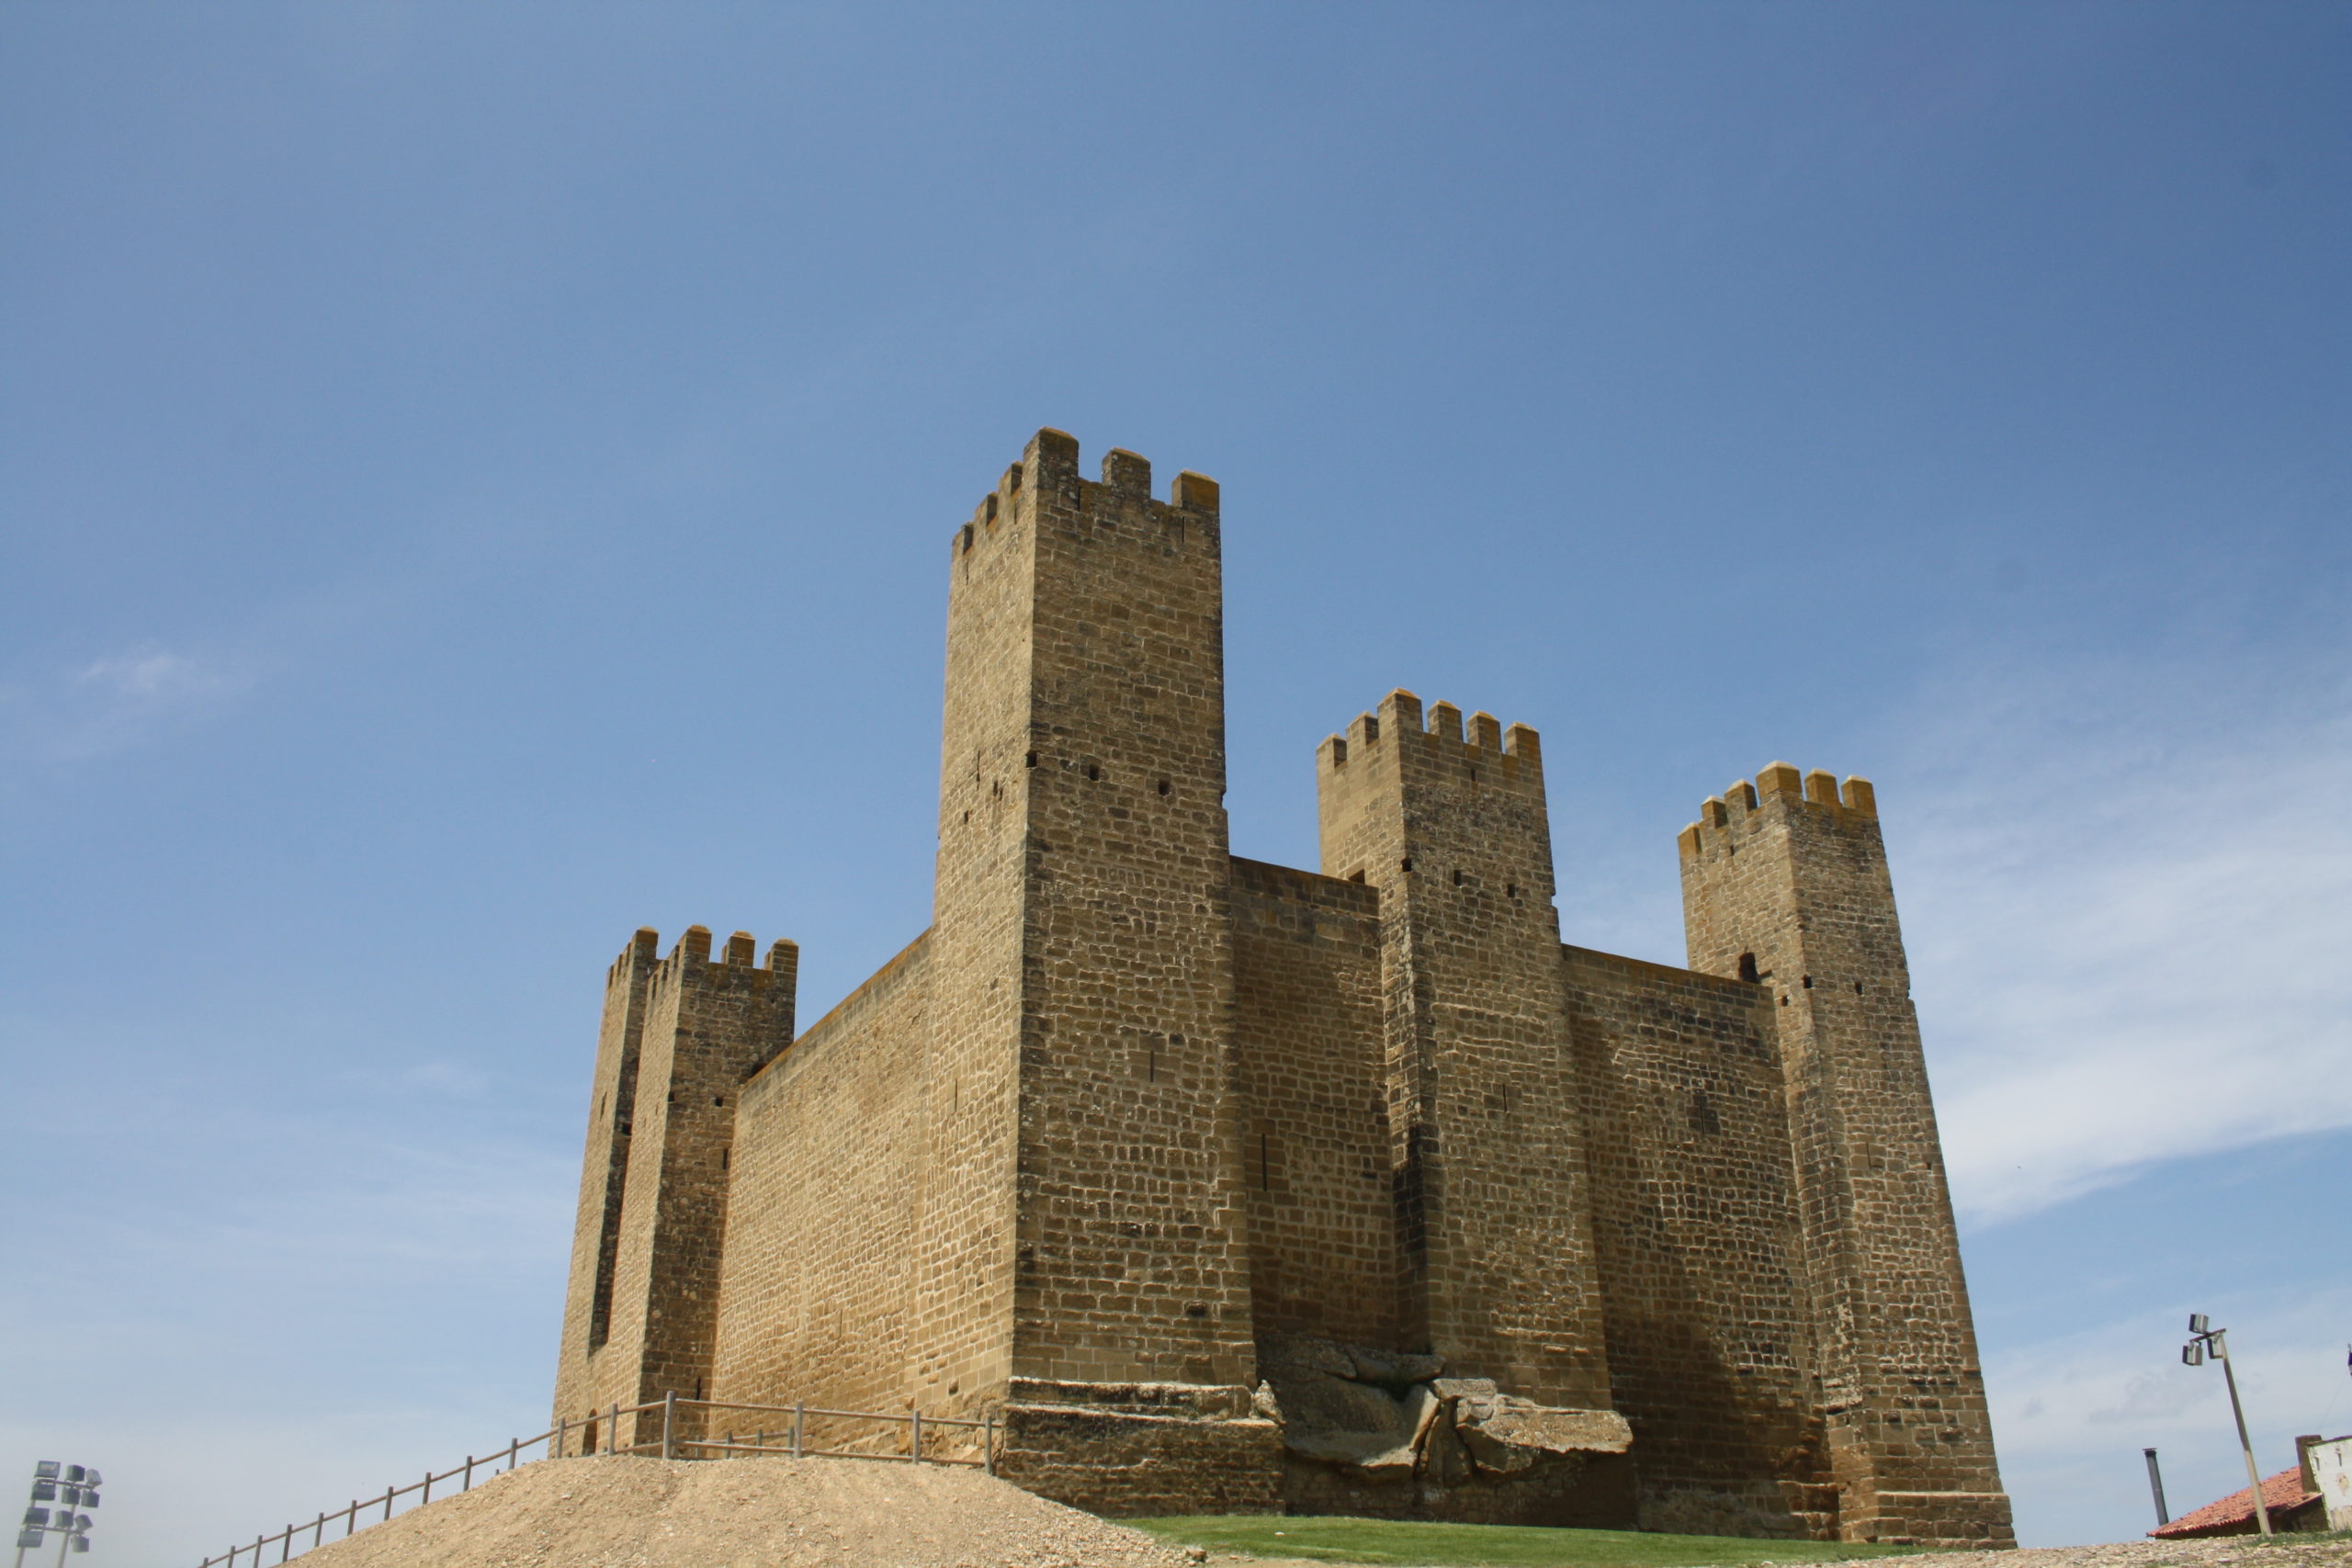 Castle of Sádaba.